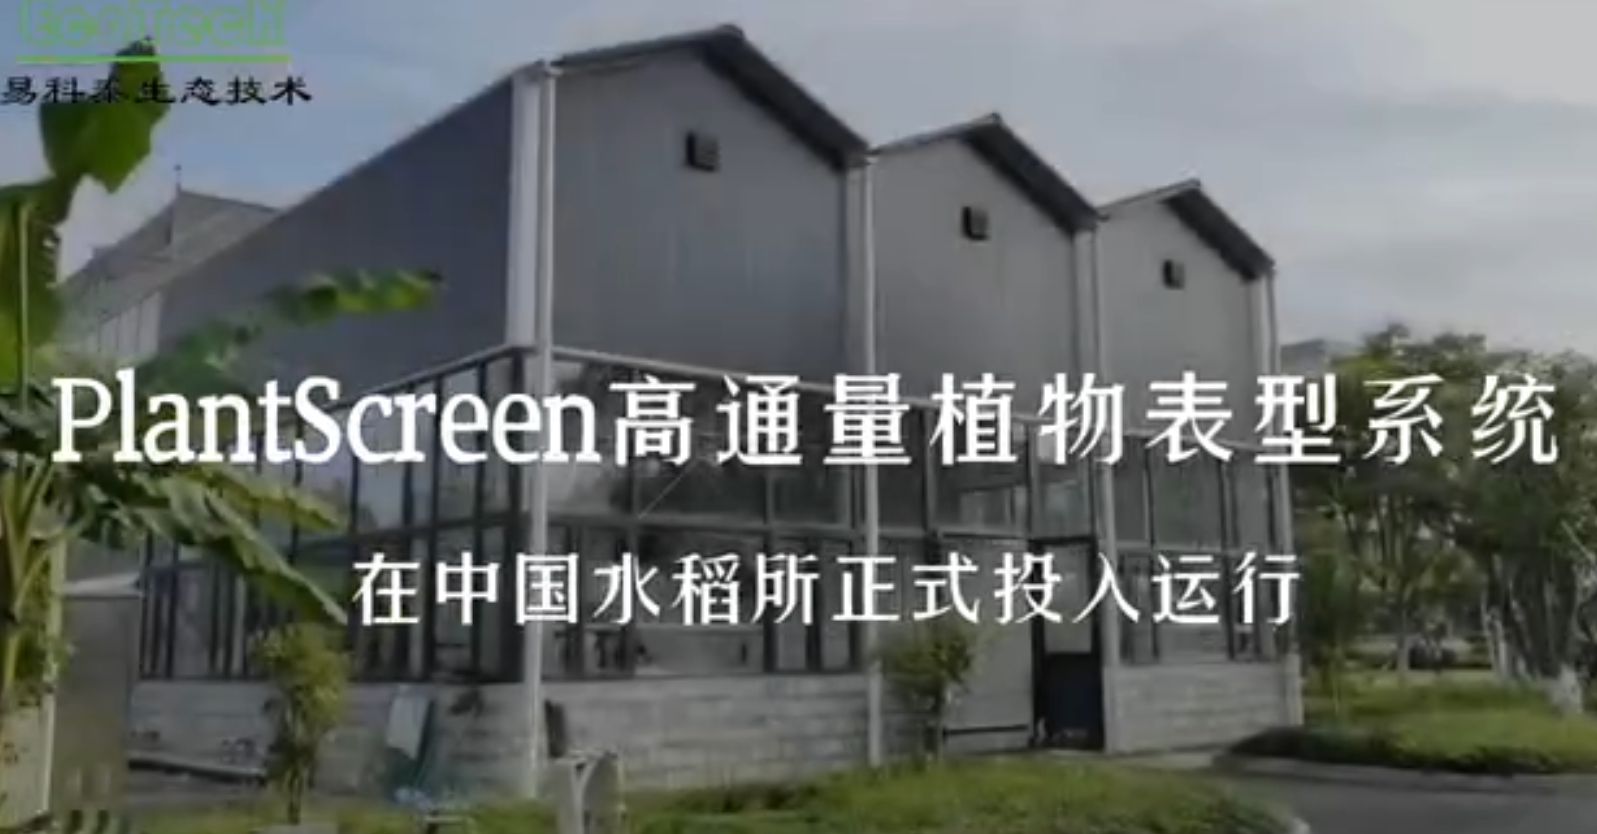 PlantScreen高通量植物表型系统在水稻研究所正式投运